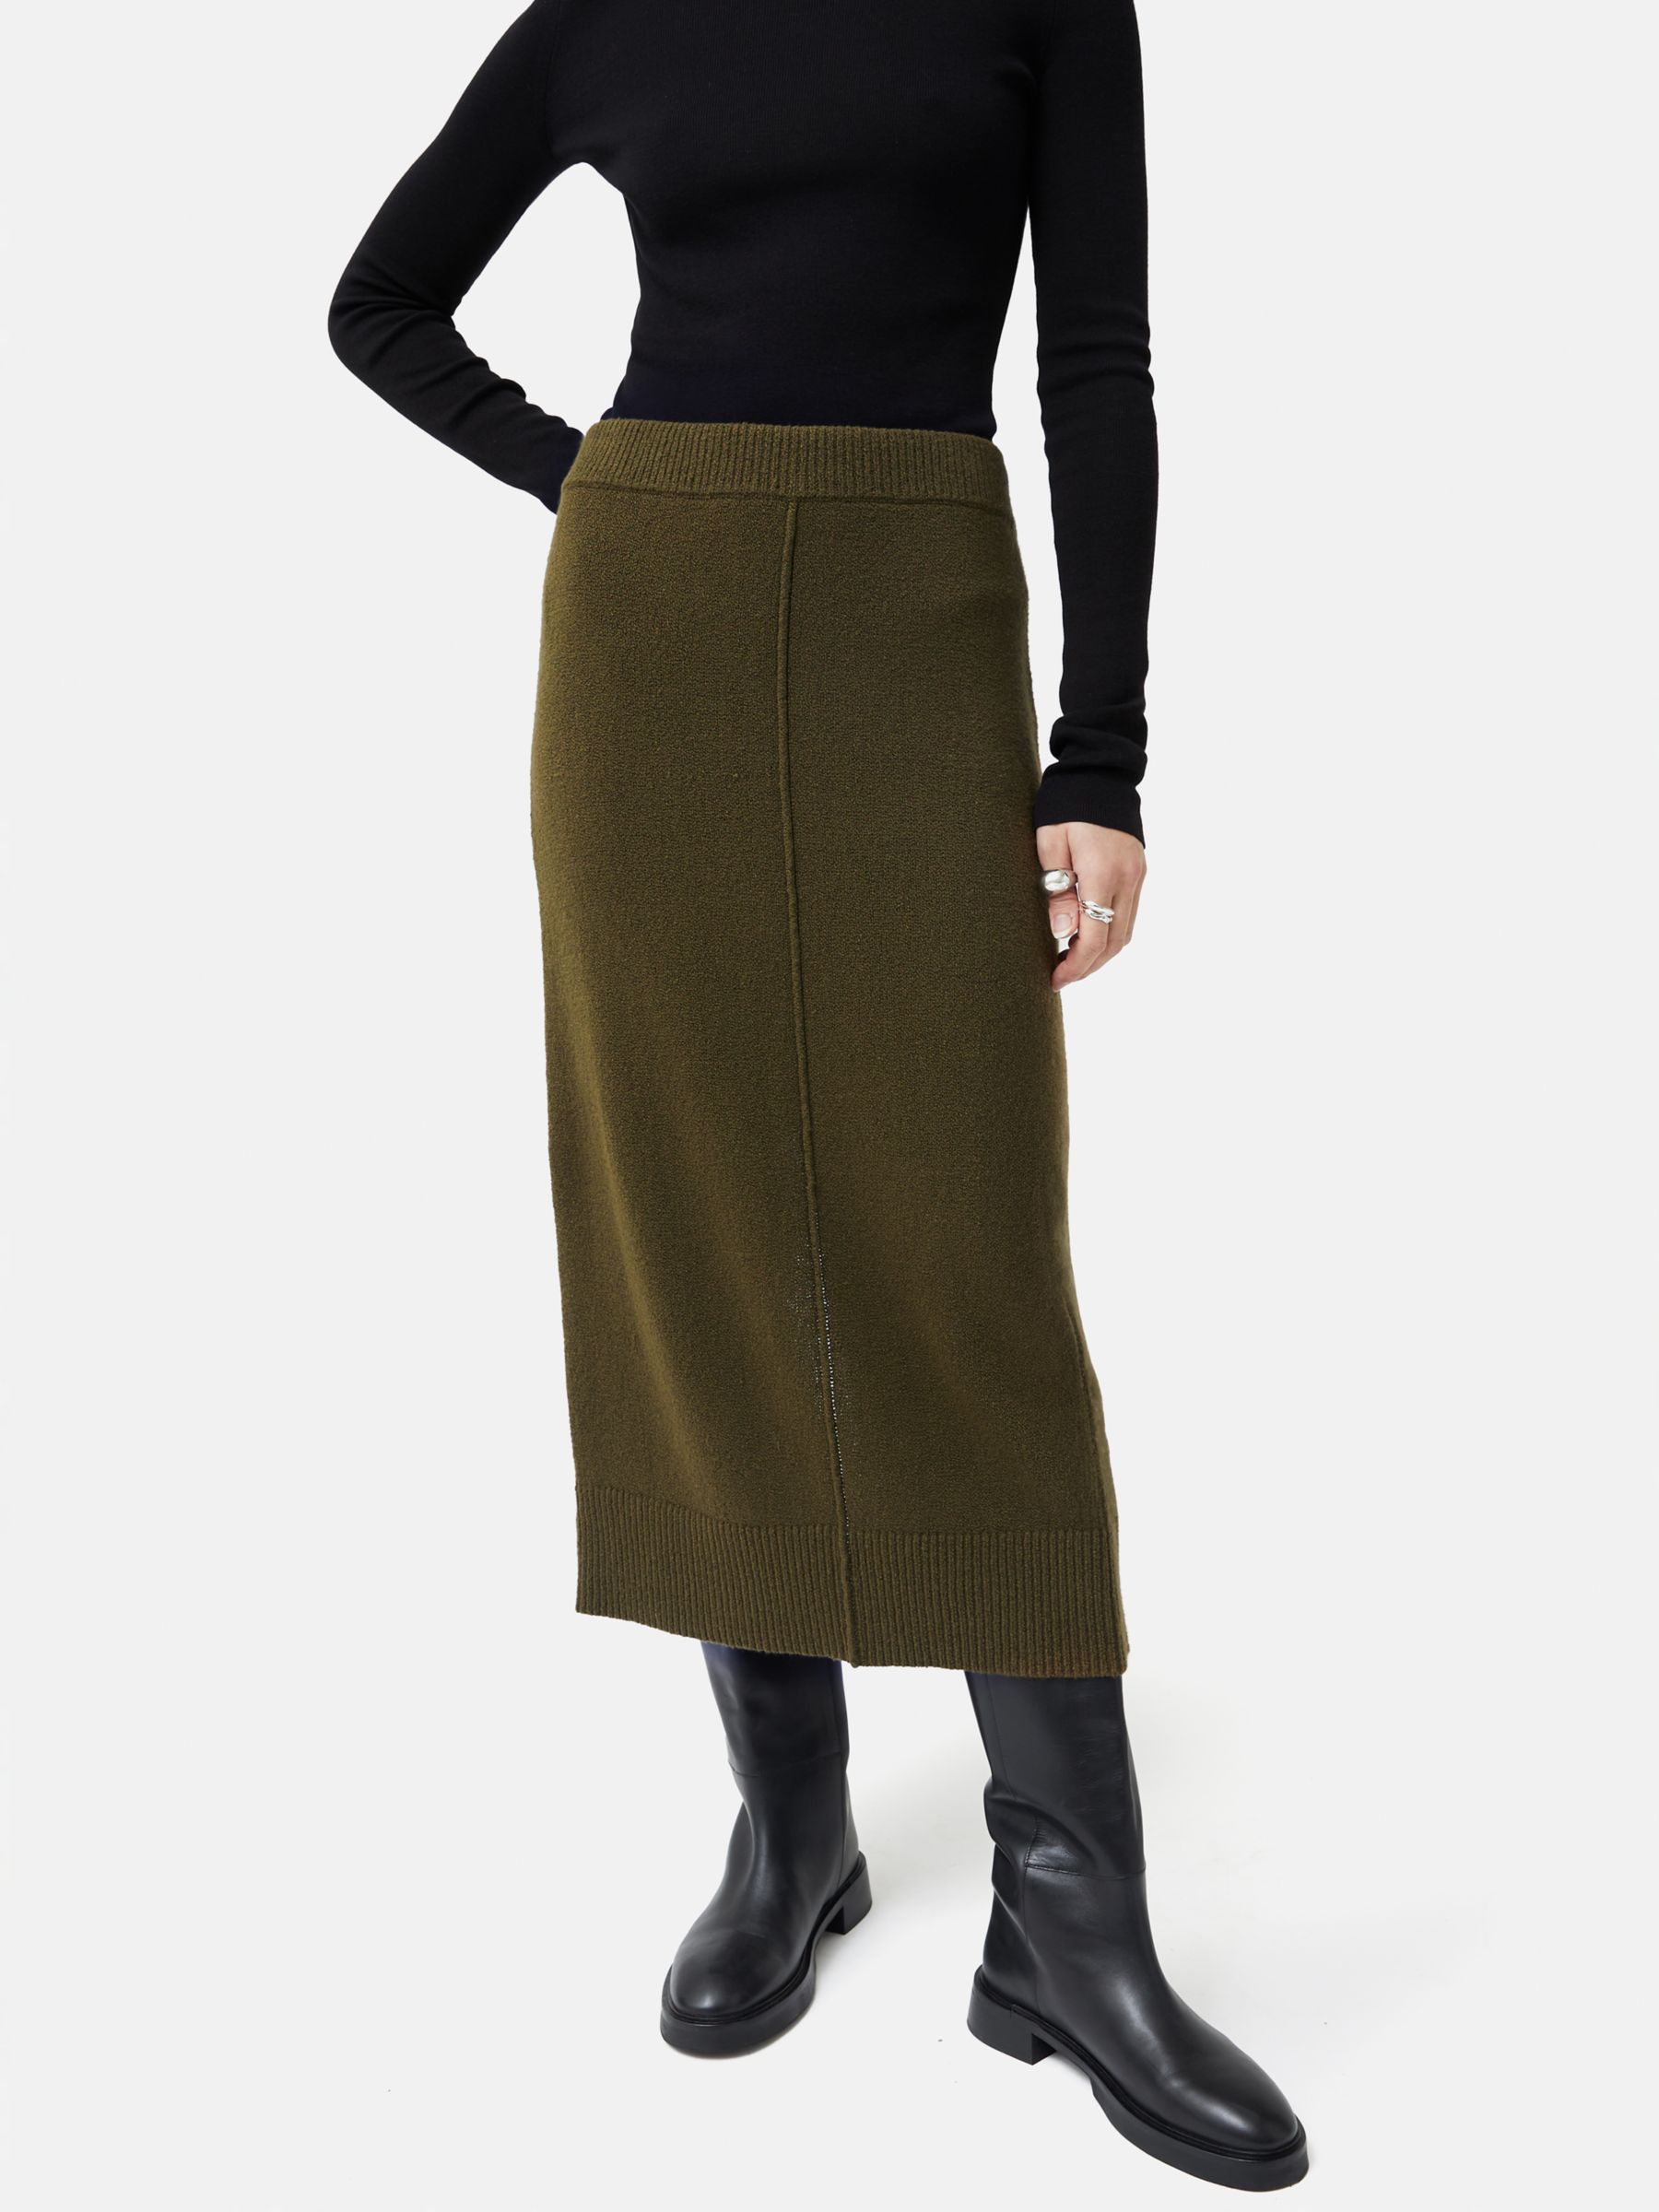 Jigsaw Knitted Pencil Skirt, Khaki, XL